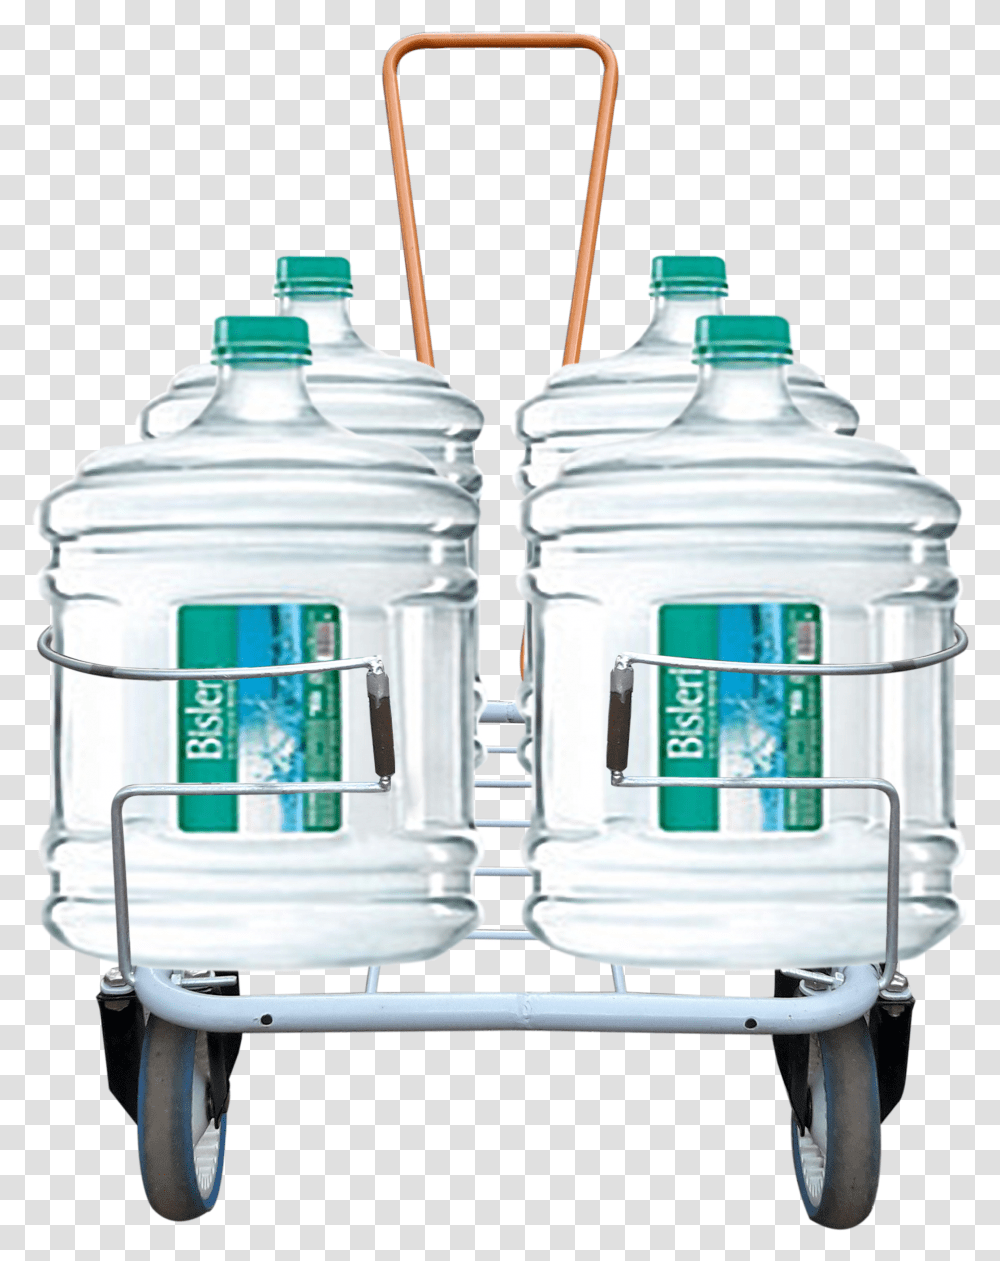 Bisleri Mineral Water Bottle Transparent Png